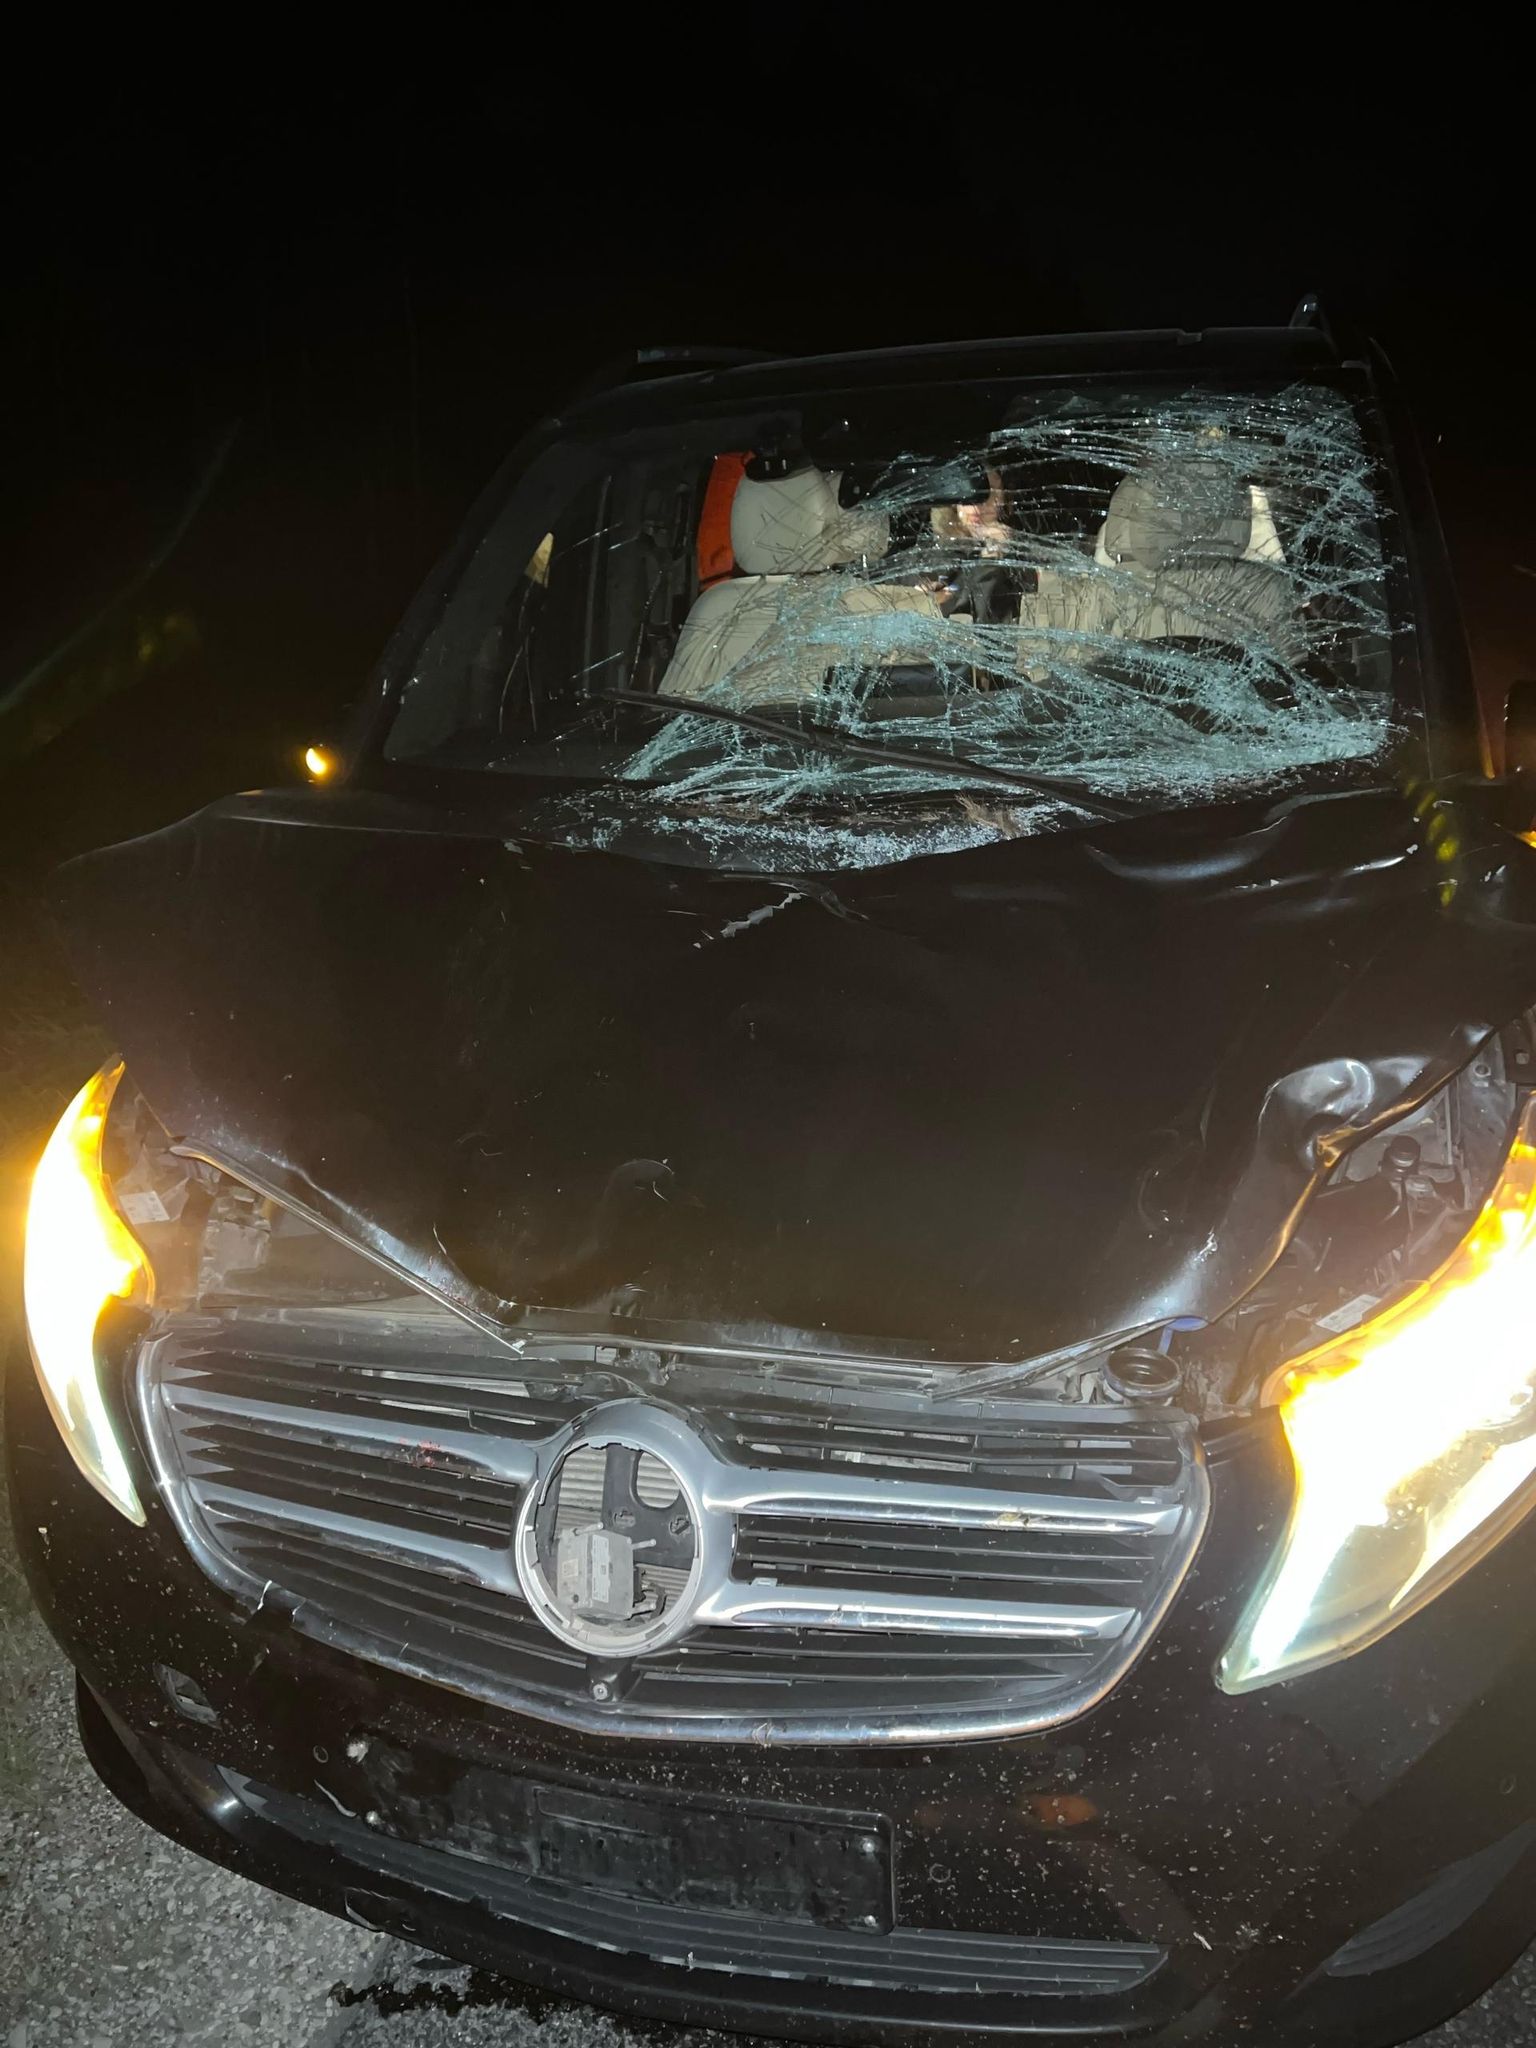 Животное упало на лобовое стекло автомобиля. Машина была повреждена, дизельное топливо пролилось на дорогу, но помощь семья не получила.